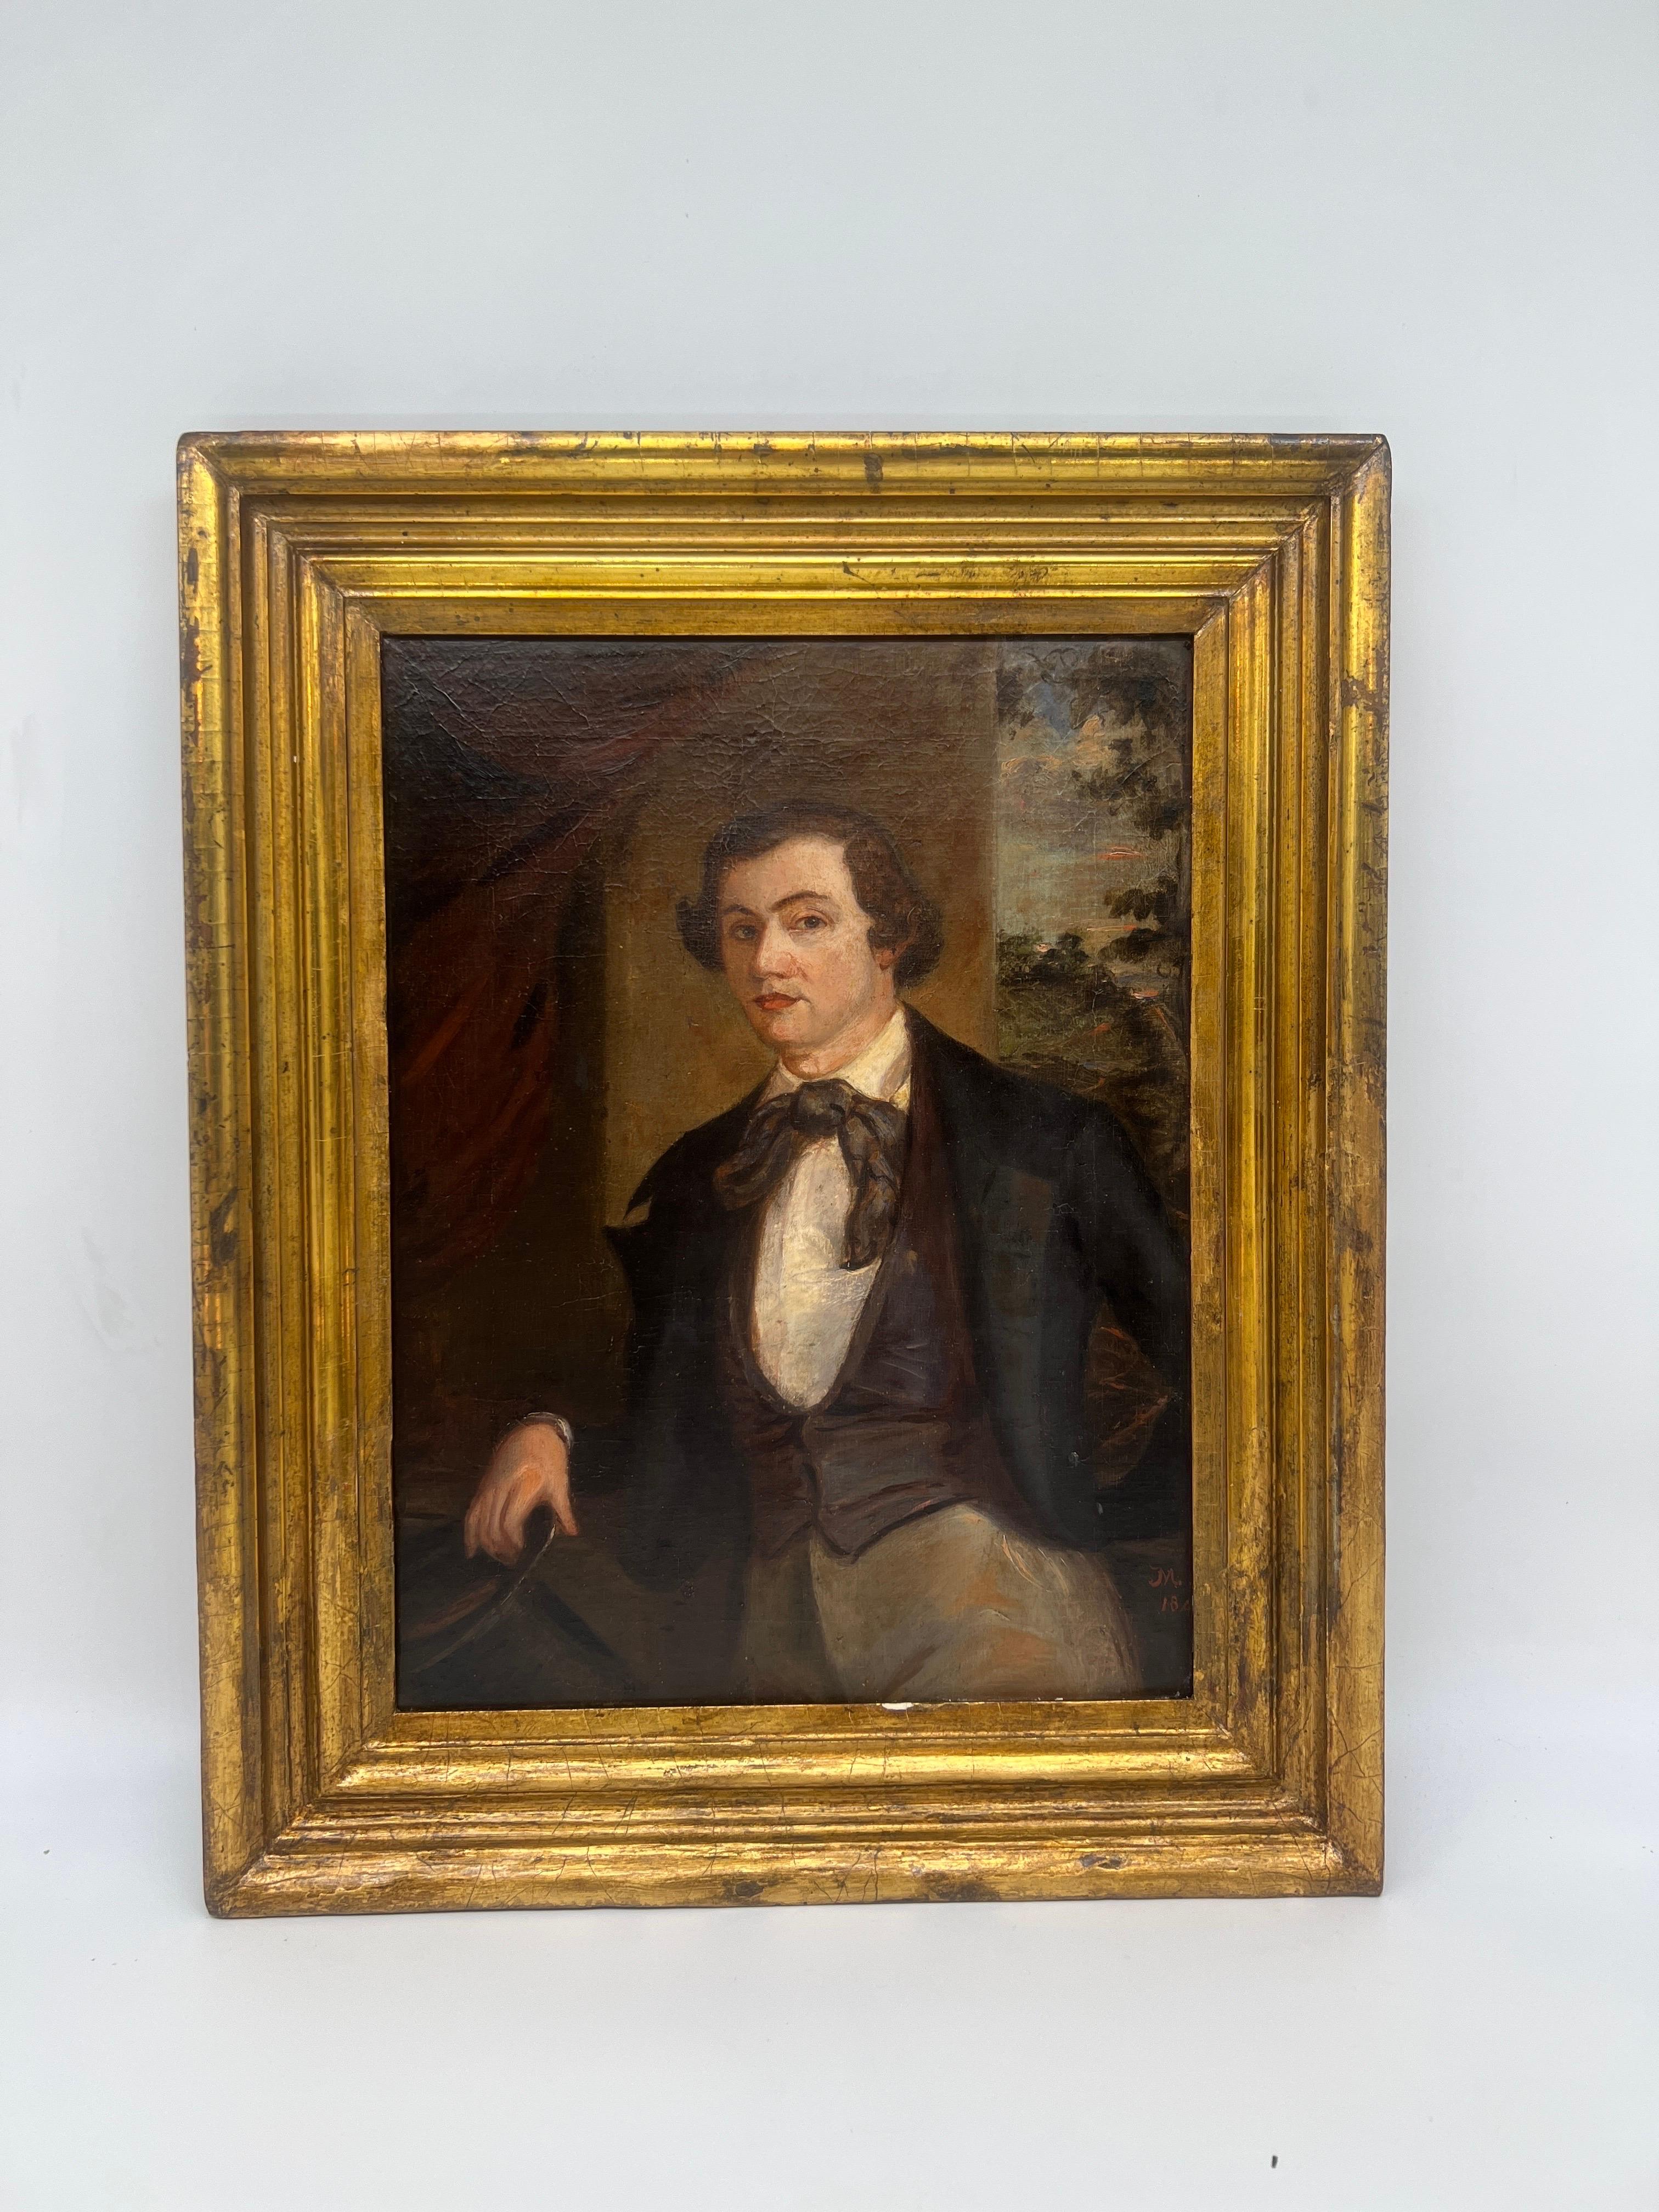 Portrait d'un gentleman de l'école américaine du Sud, O/B, Circa 1842.
Portrait de qualité d'un gentleman, probablement un jockey ou un homme d'affaires. Provenant d'une importante collection de portraits du Sud. Signé en bas à droite probablement